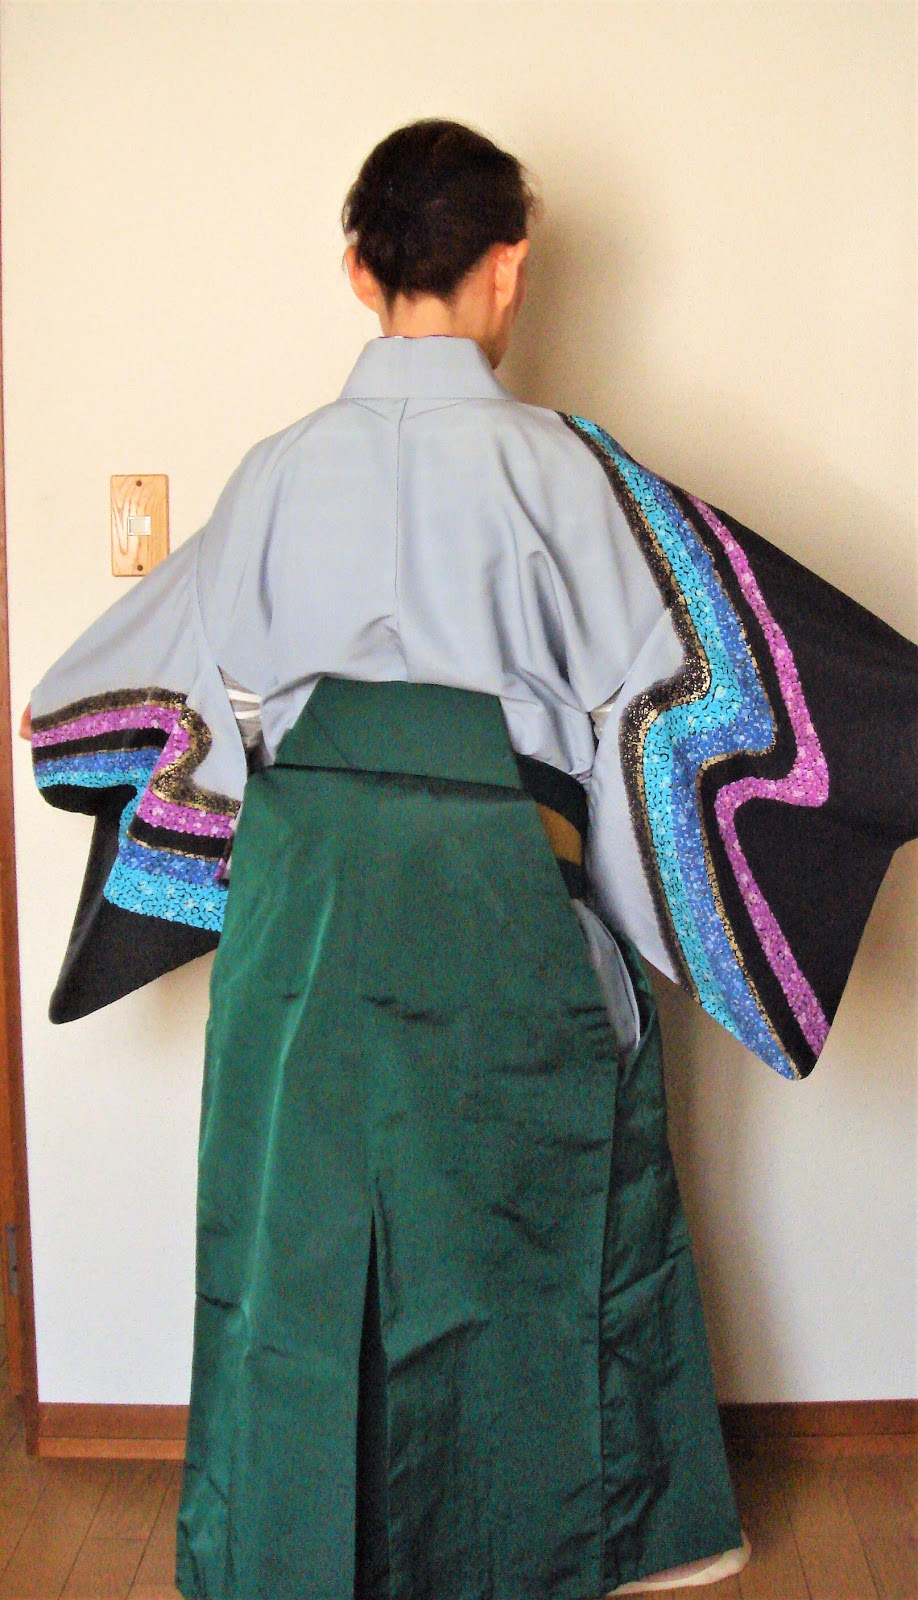 お試しと感想 馬乗り袴を着付けてみた 余興の準備 50代60代の普段着物 母の着物からハッピーライフ